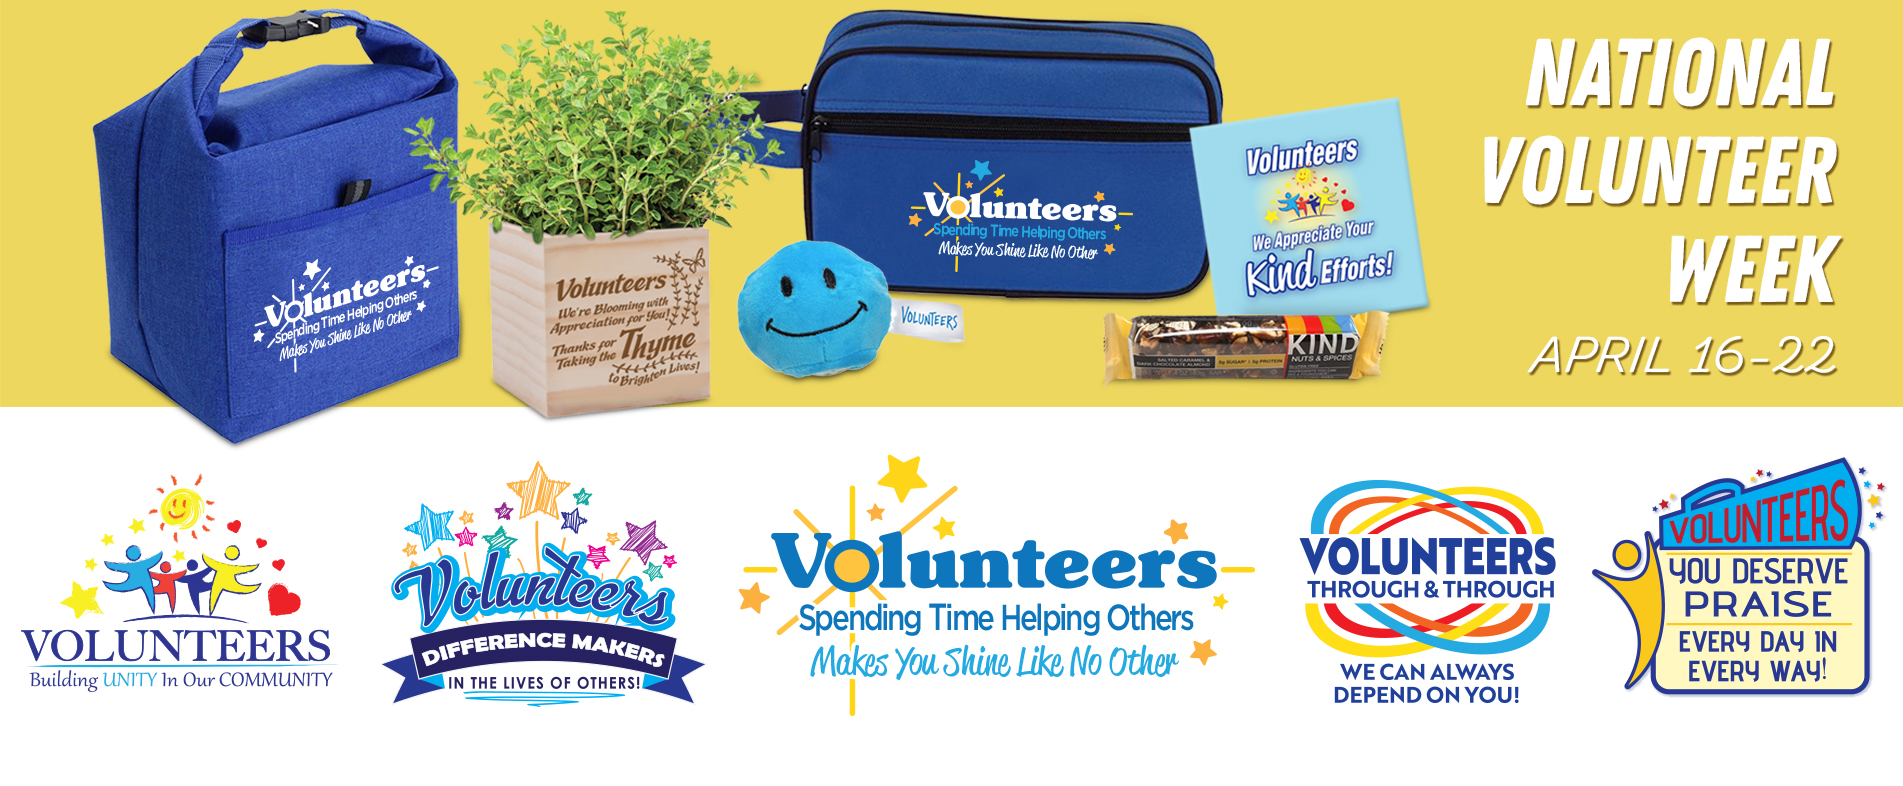 National Volunteer Week 2019 Themes